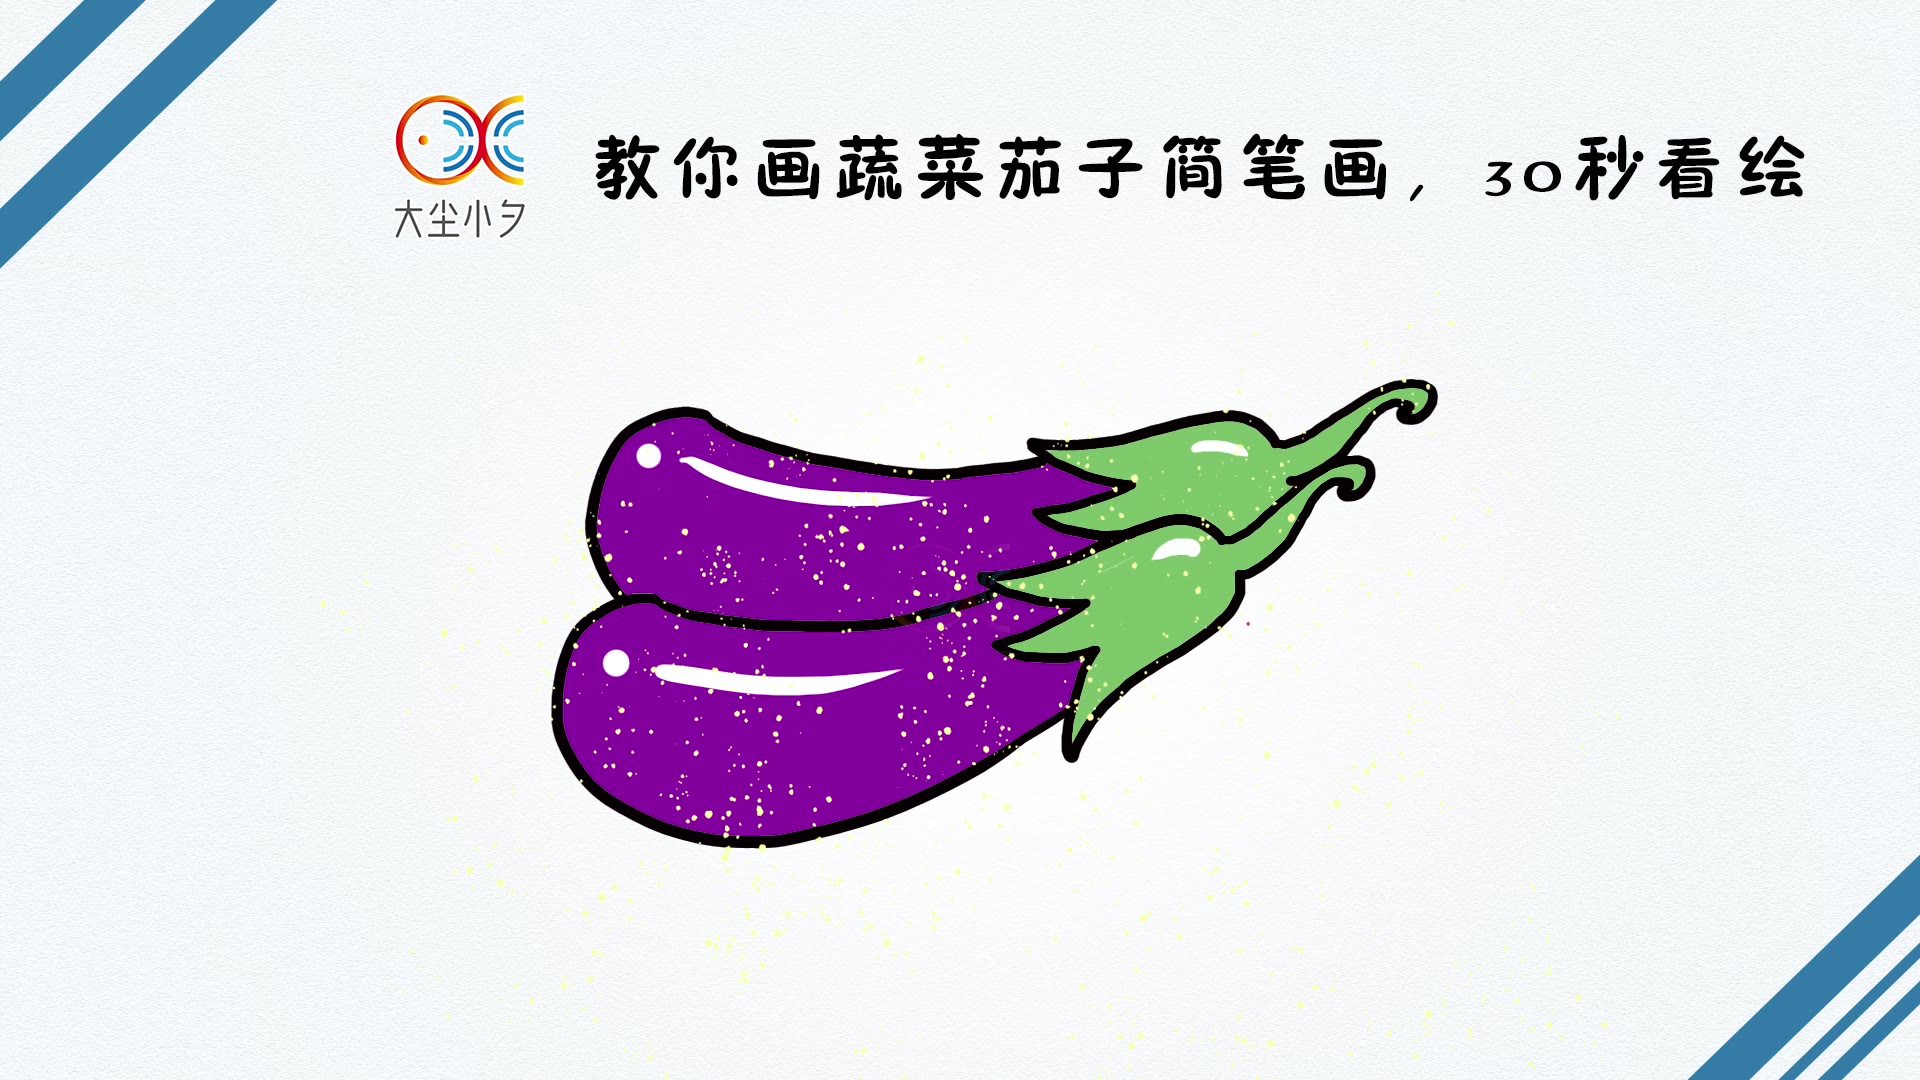 紫色蔬菜简笔画图片